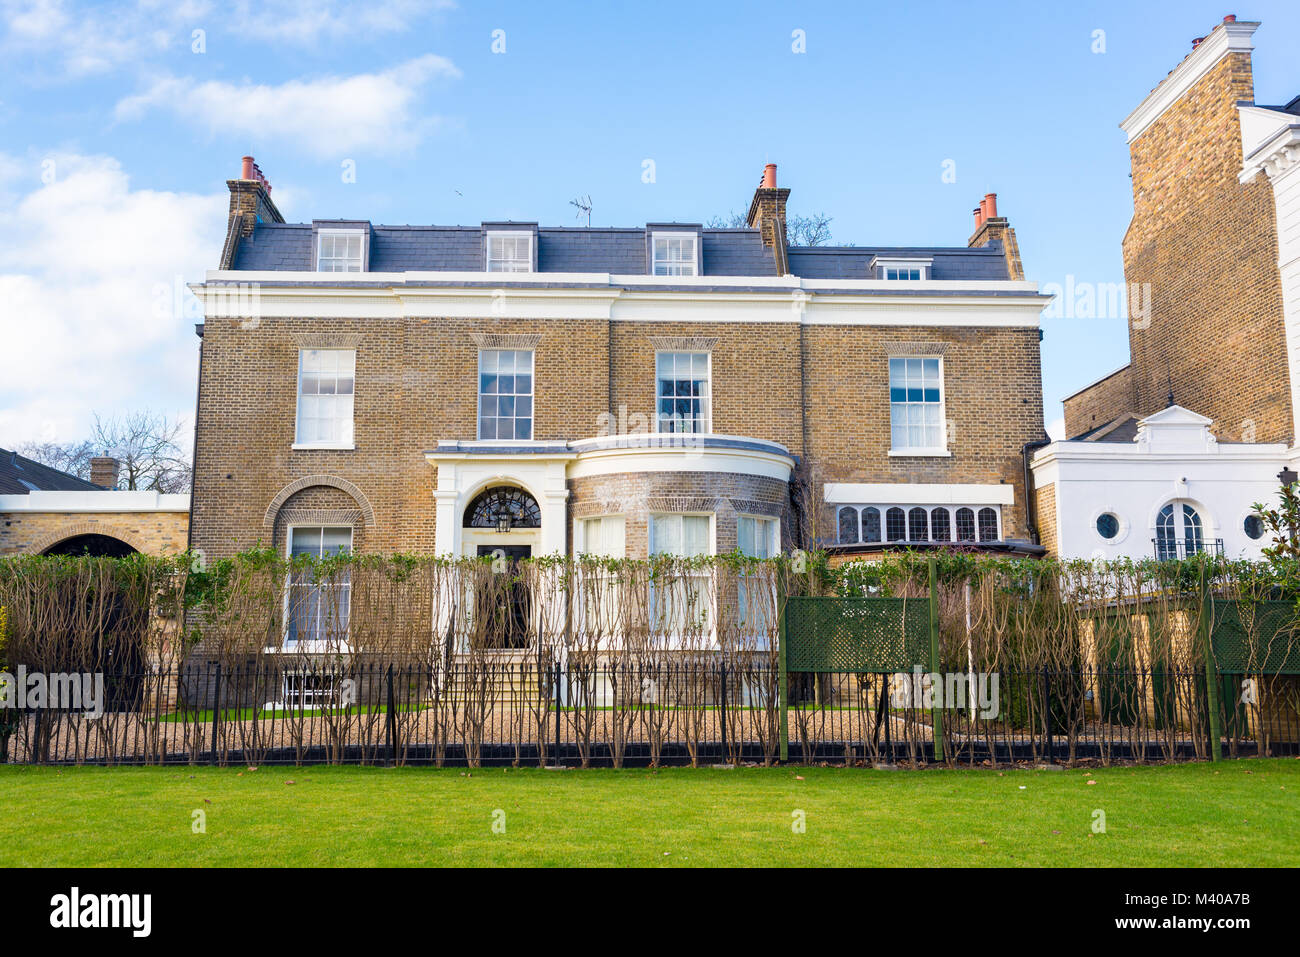 Clapham London, UK - Januar 2018: Fassade eines opulenten Viktorianischen Haus Luxus Villa in gelben Backsteinen und weißen Schlichten mit privaten Gard Stockfoto